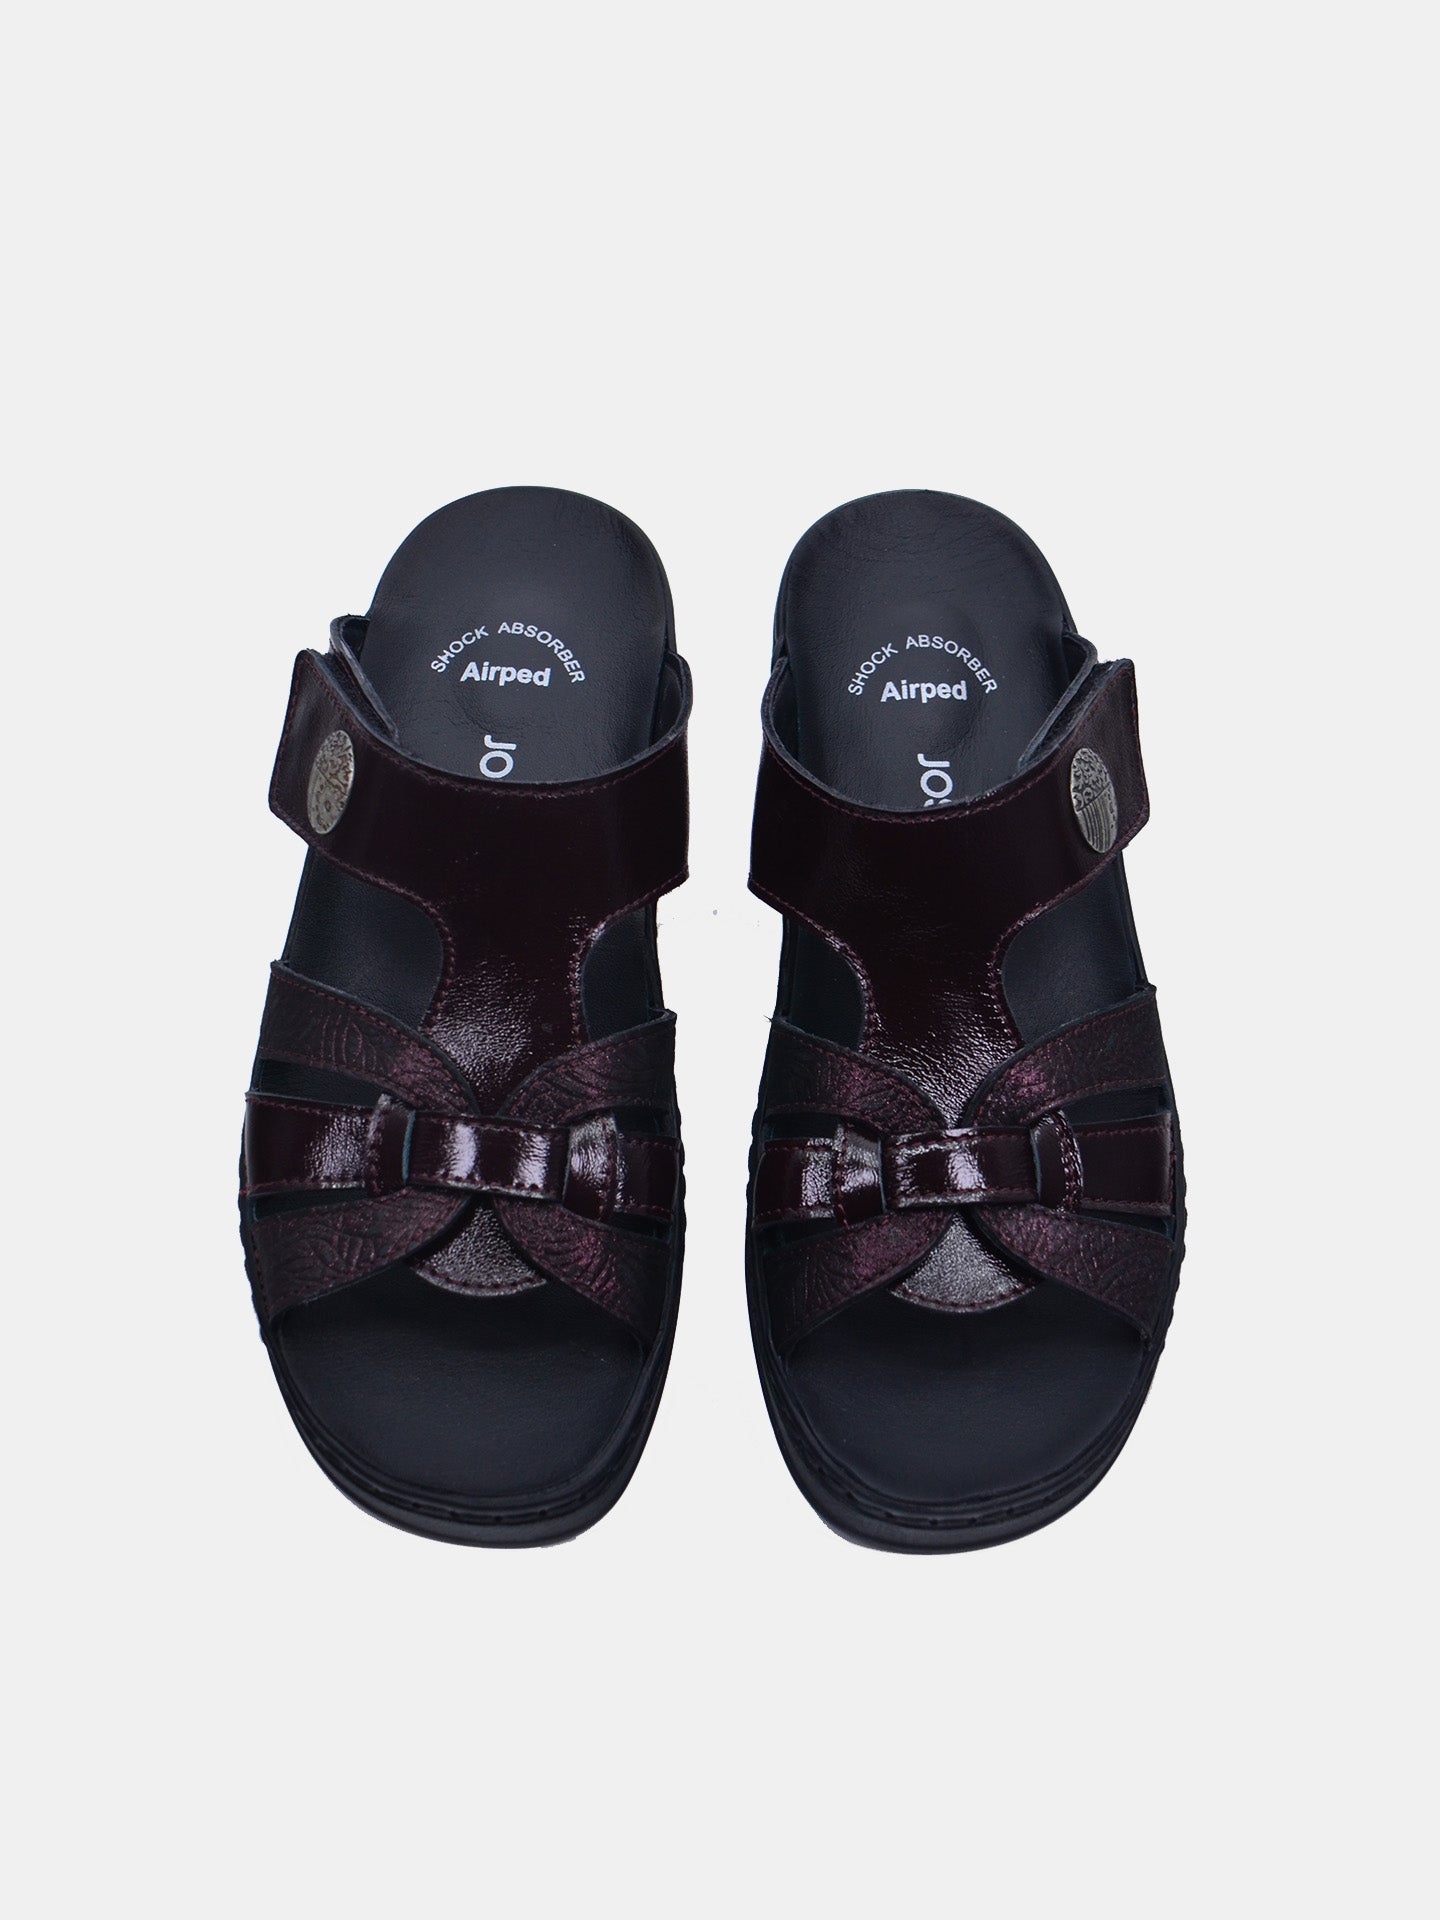 Josef Seibel 08809AR Women's Slider Sandals #color_Maroon